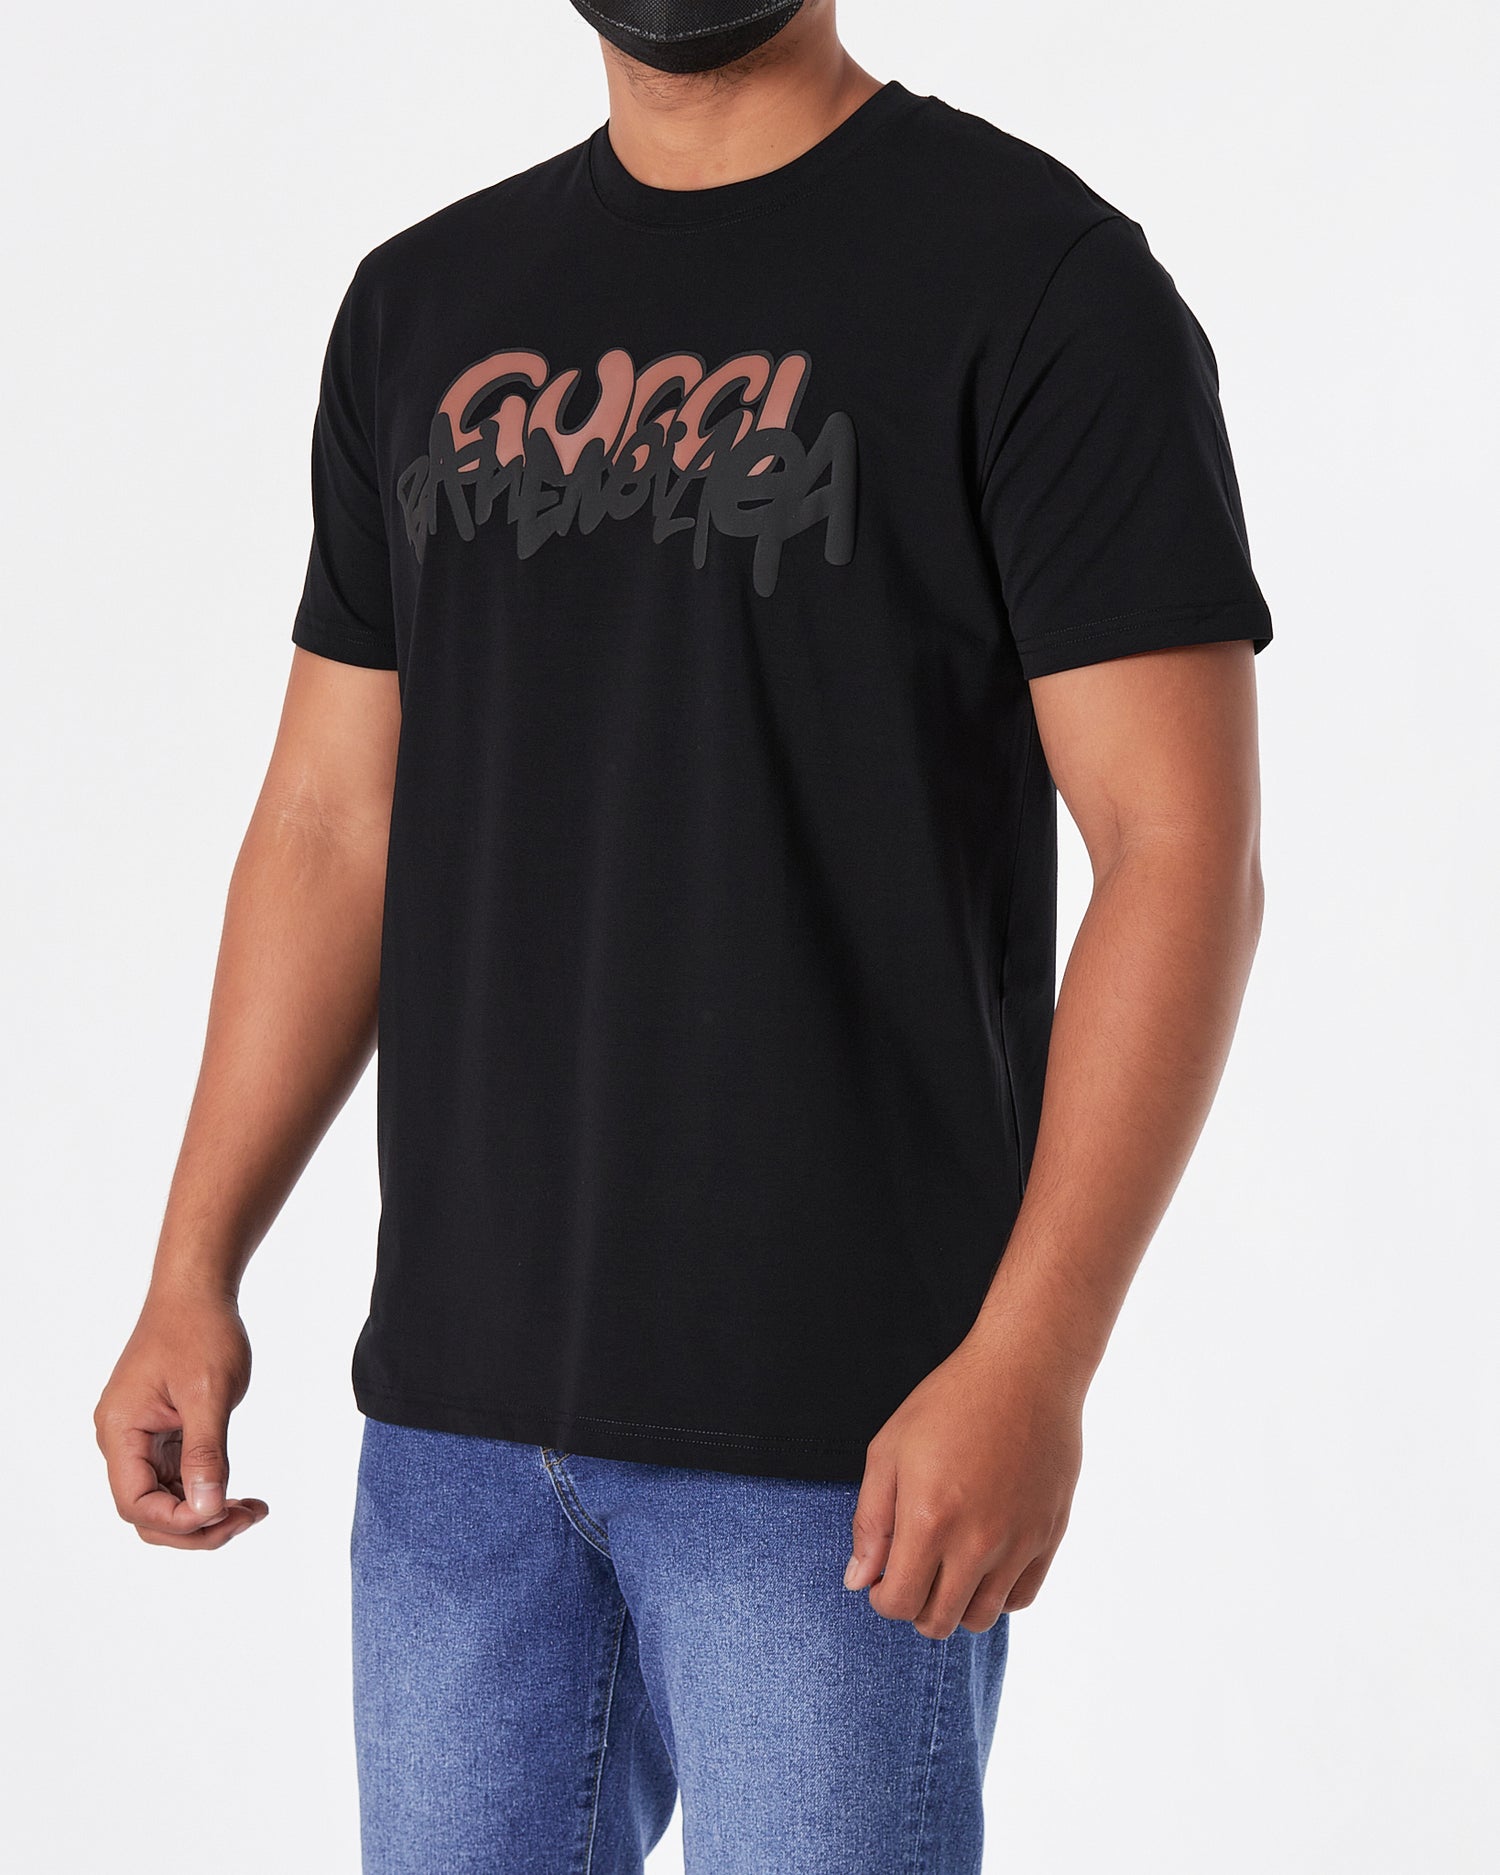 GUC x BB Printed Men Black T-Shirt 18.90